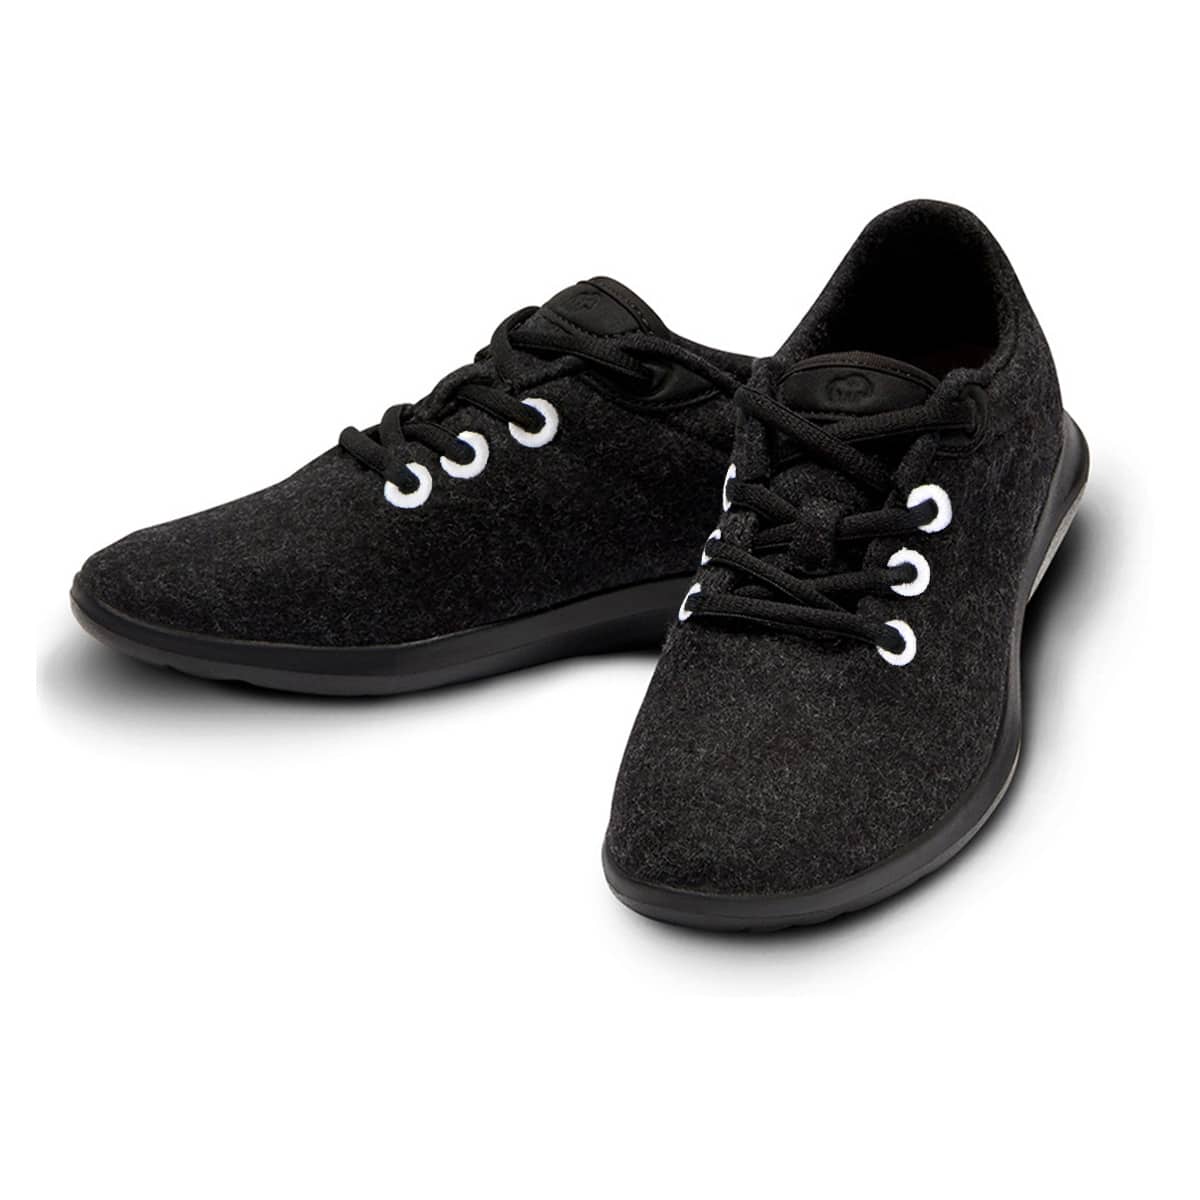 Chaussure Merino noire et blanche